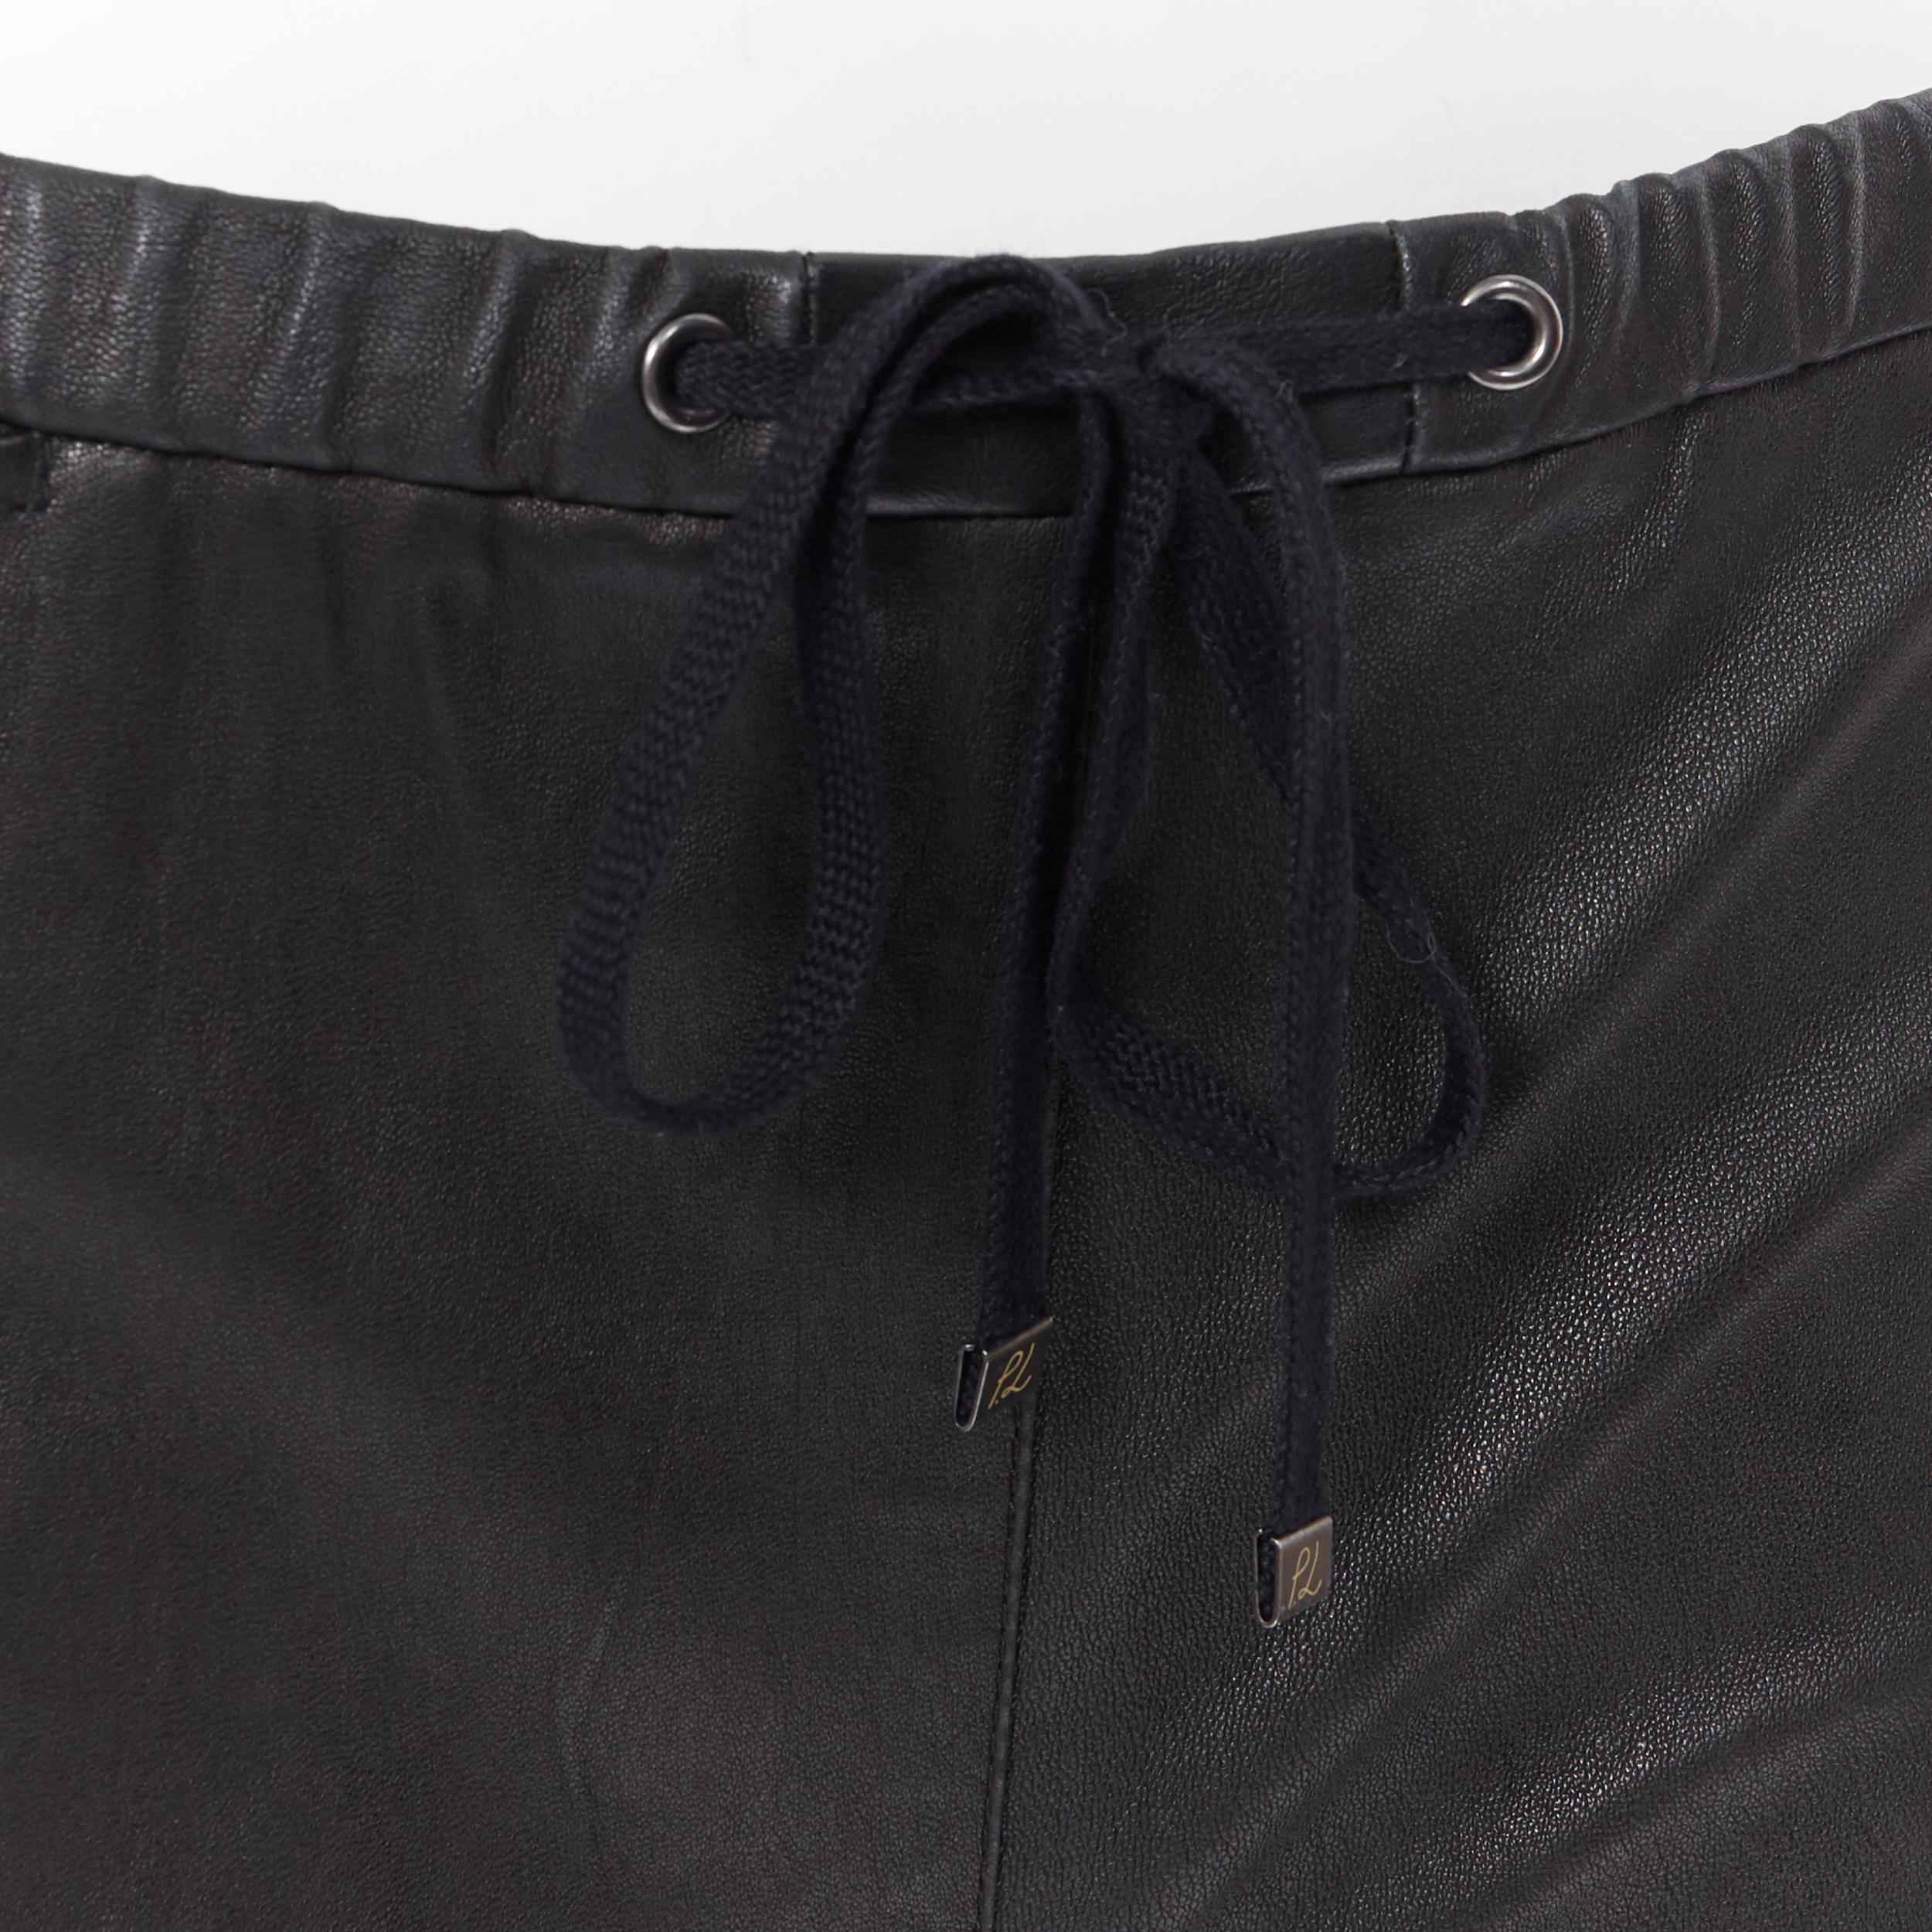 3.1 PHILLIP LIM  black leather beige trimmed curved hem drawstring shorts US0 1